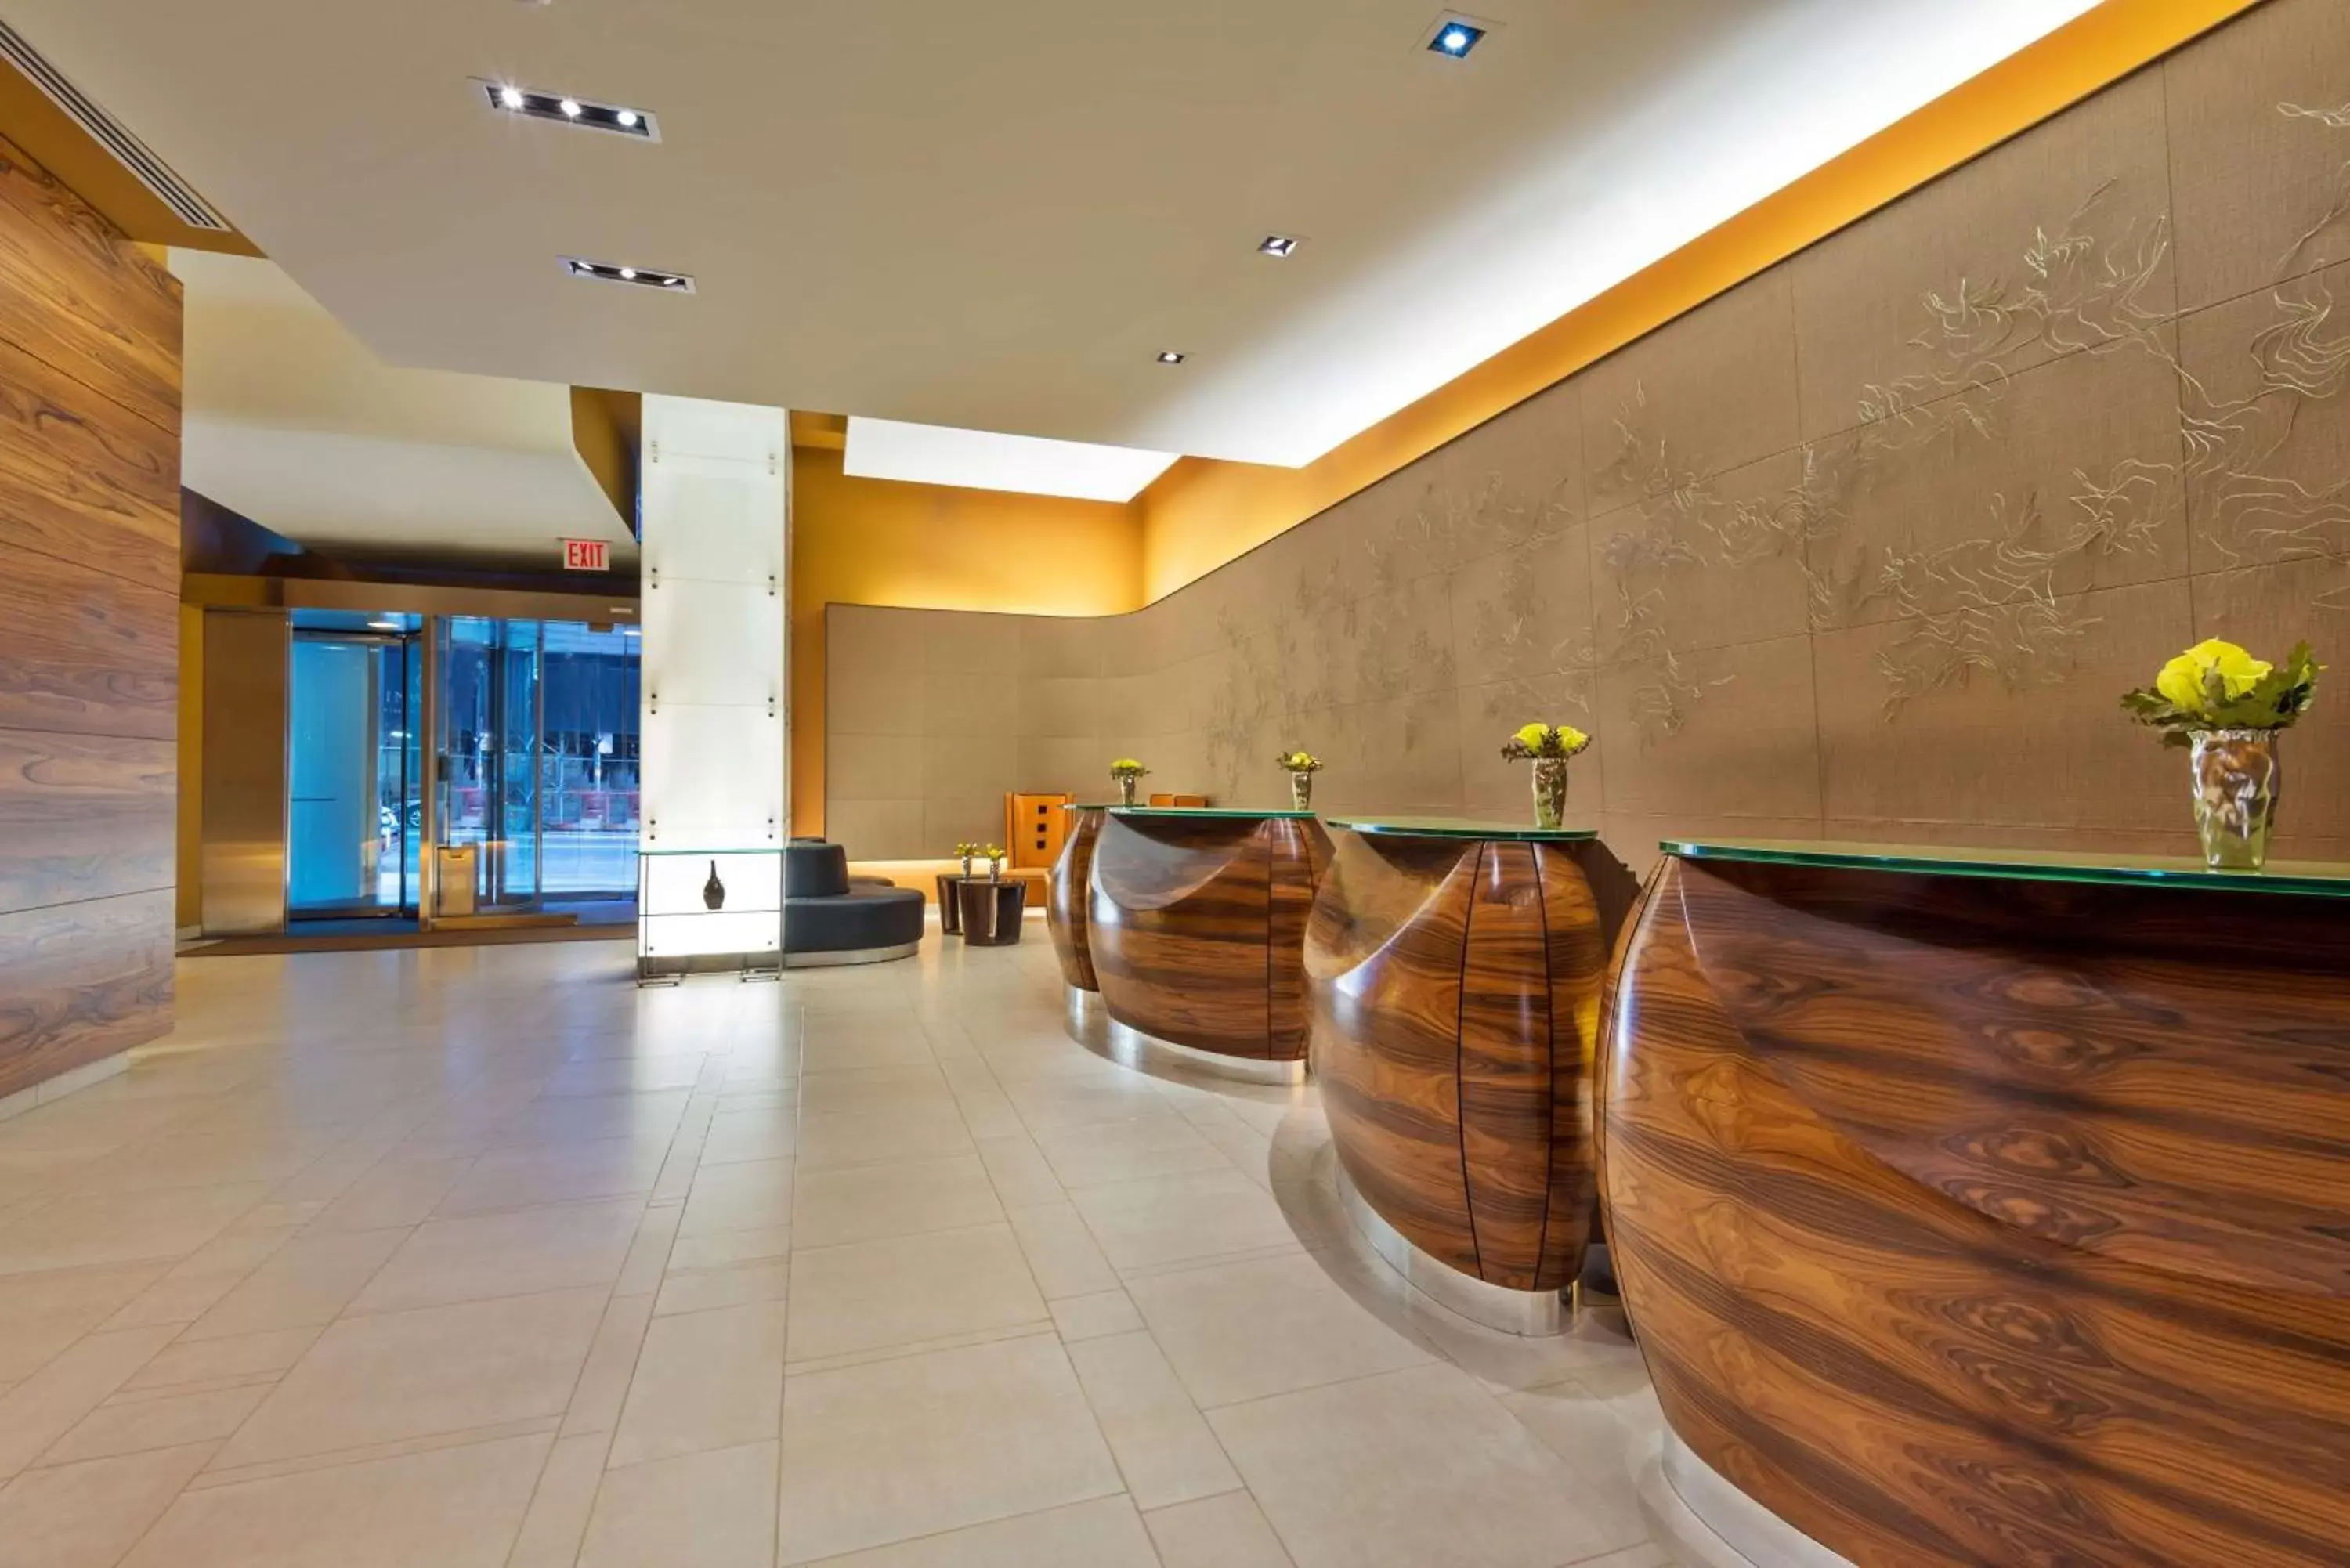 Lobby or reception, Lobby/Reception in Hilton Club West 57th Street New York